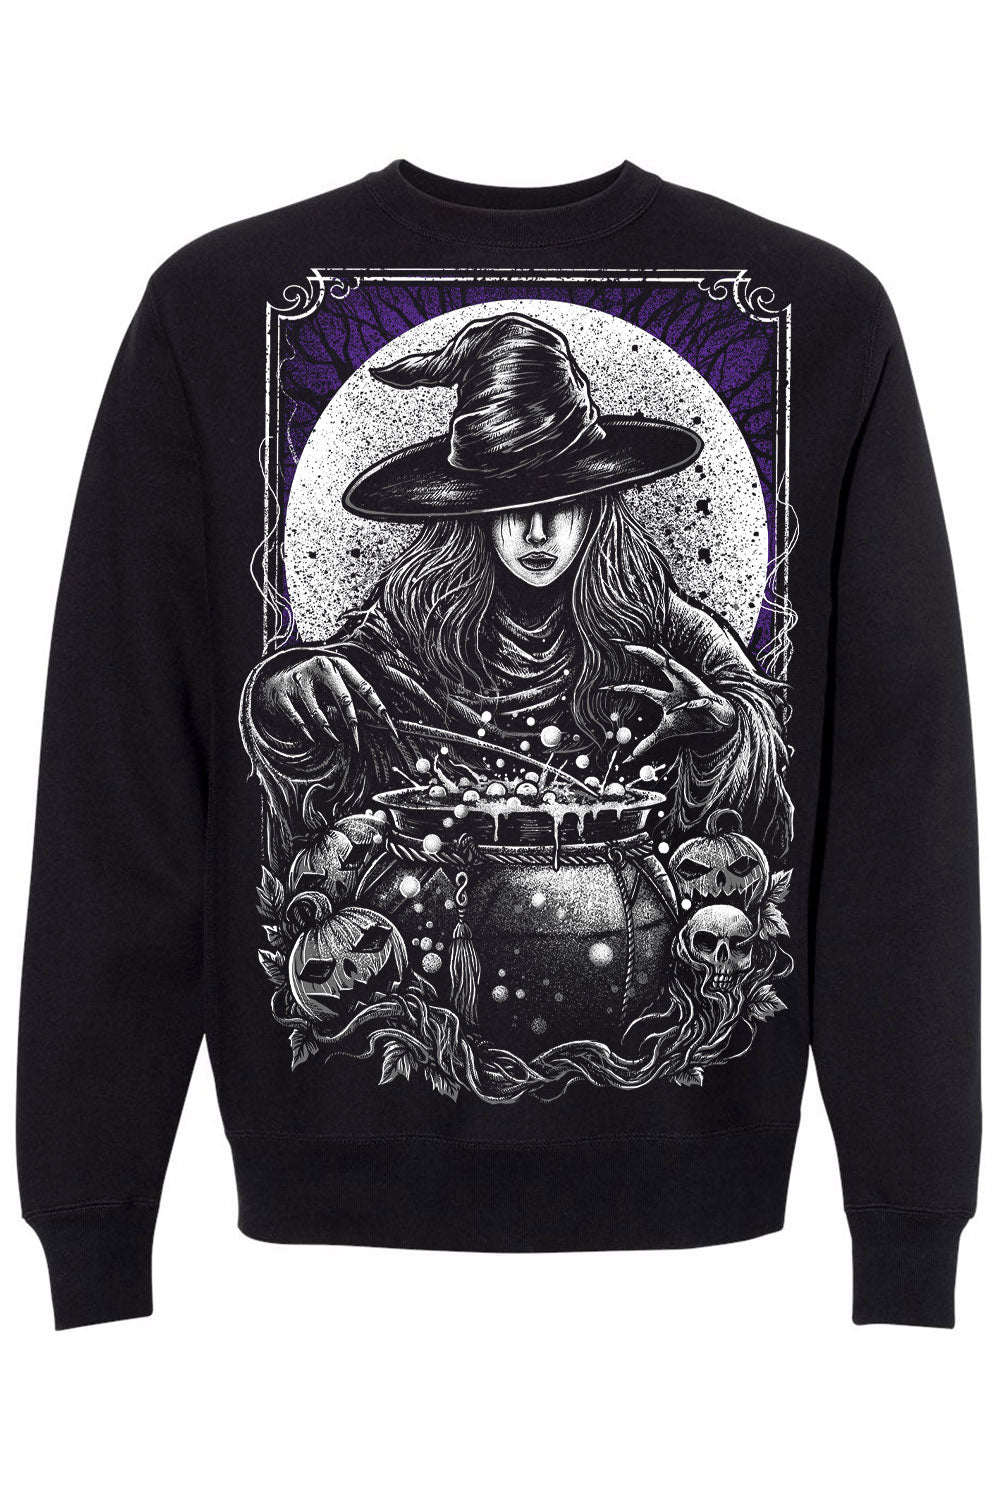 gothic witch sweatshirt